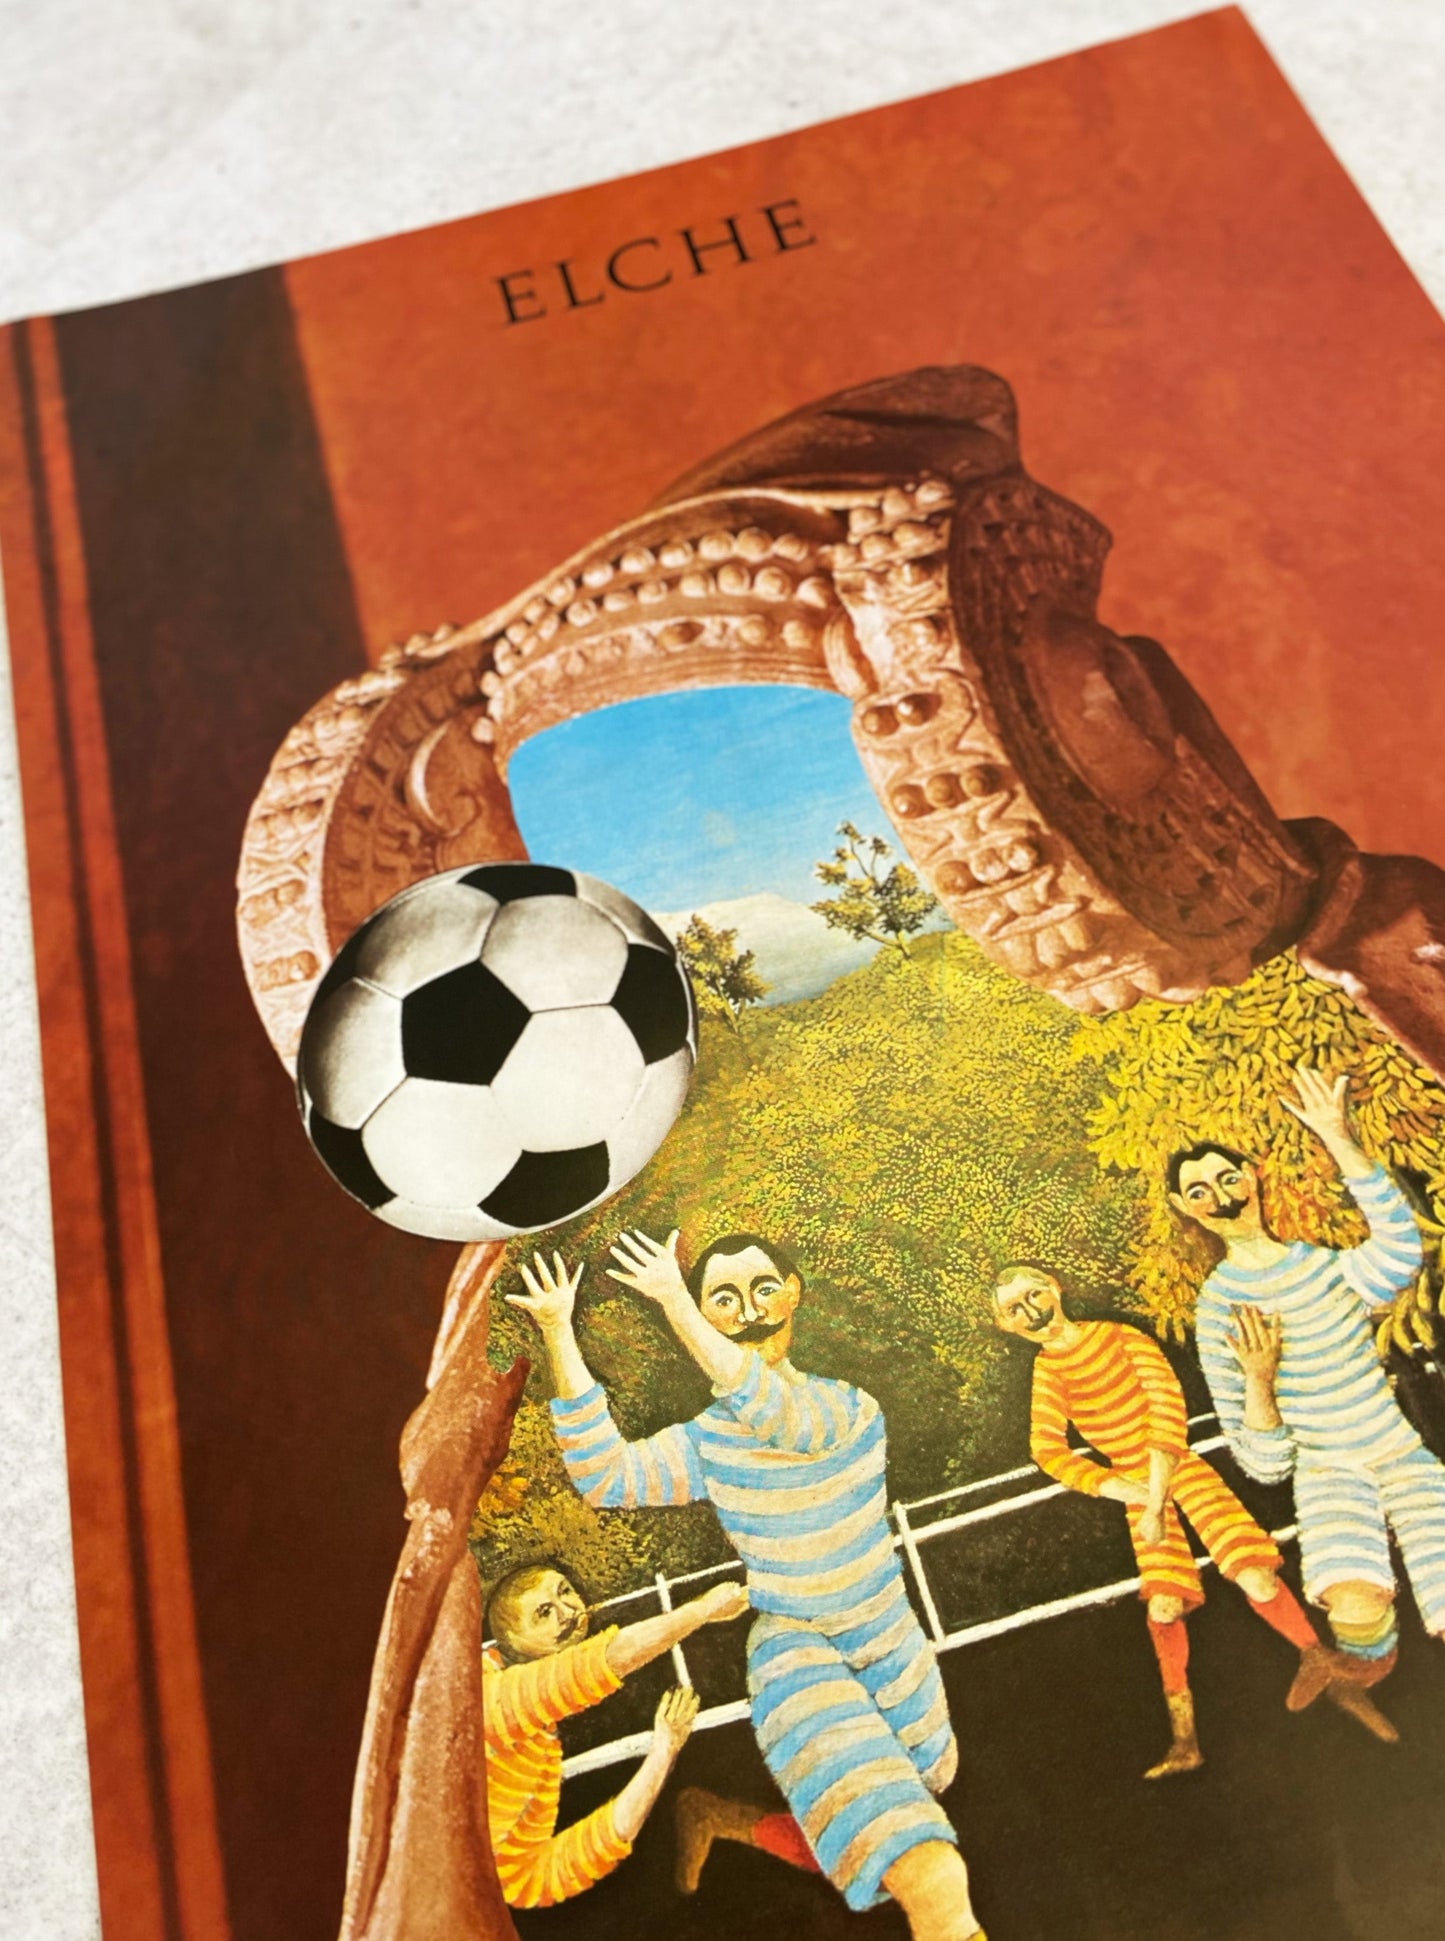 1982 ELCHE COPA DEL MUNDO DE FUTBOL ESPANA ORIGINAL PRINT